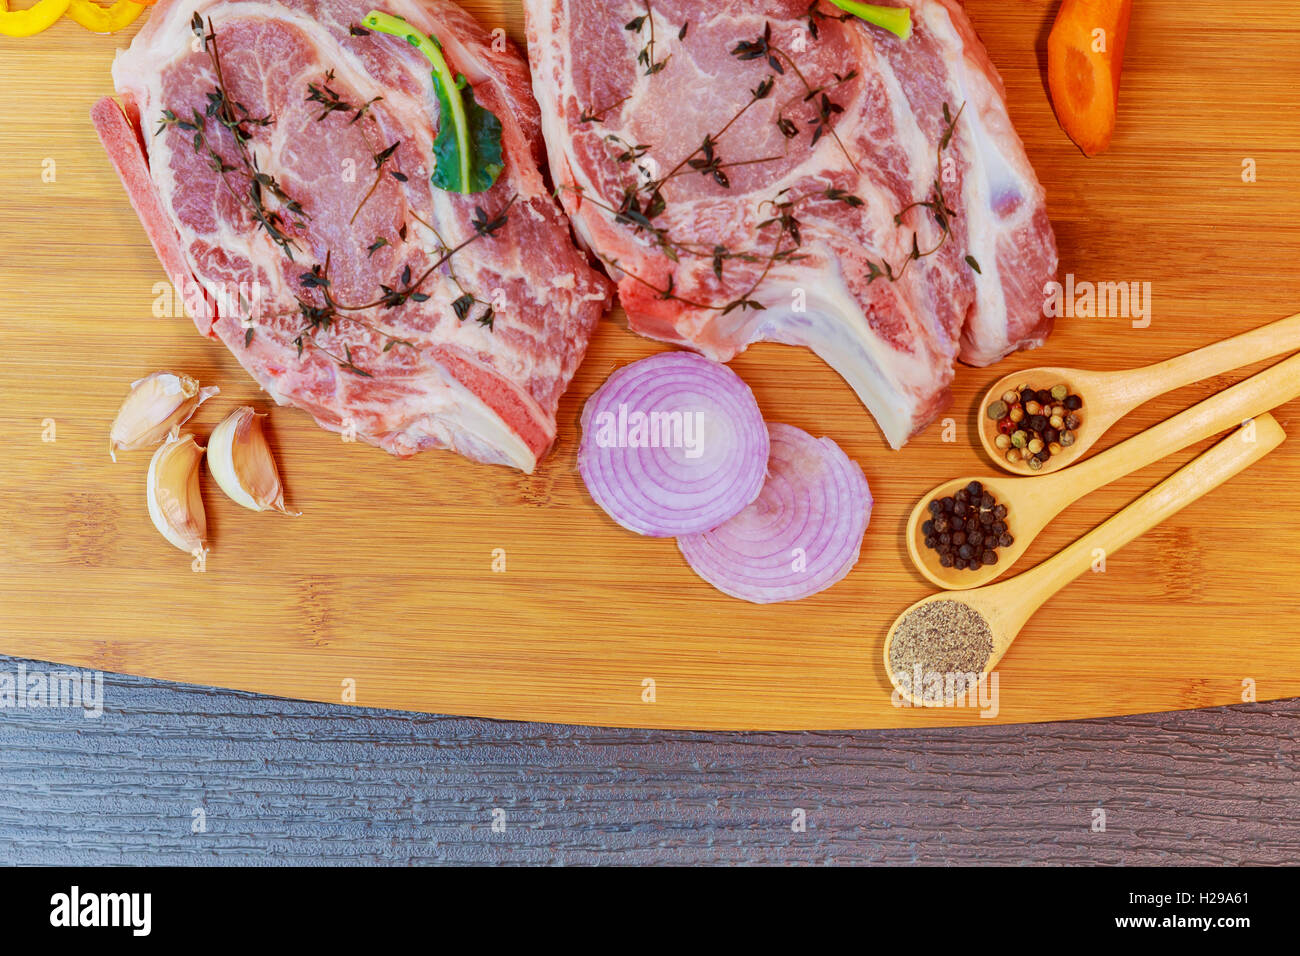 Perfekte rohen Schweinenacken mit Gewürzen, reife Tomaten, roten Zwiebeln und frische Basilikumblätter Closeup auf Holz Schneidebrett. Ansicht von oben Stockfoto